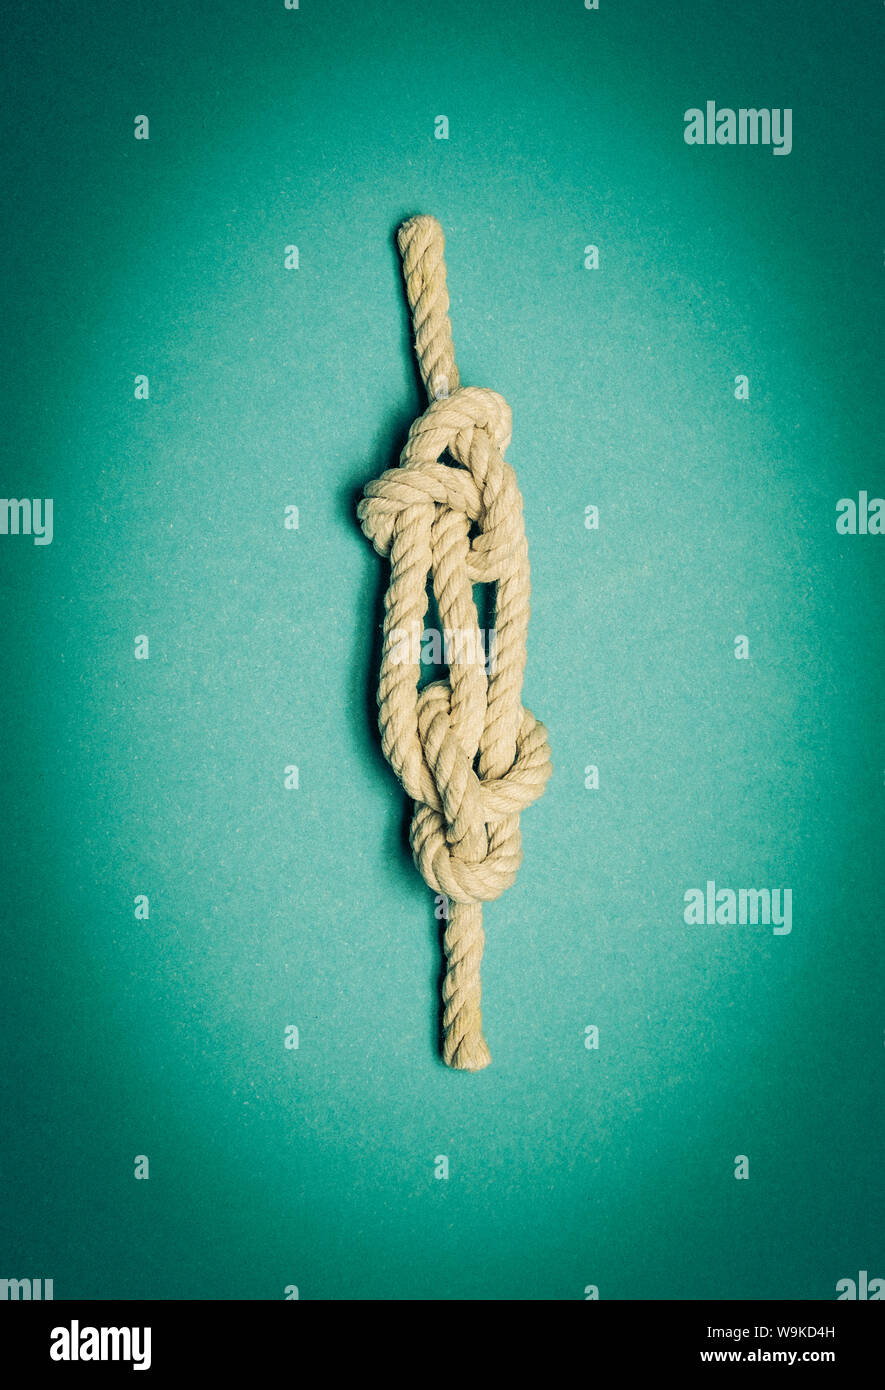 Nautical knot avec corde blanche sur fond bleu turquoise. Couverture du livre potentiel. Banque D'Images